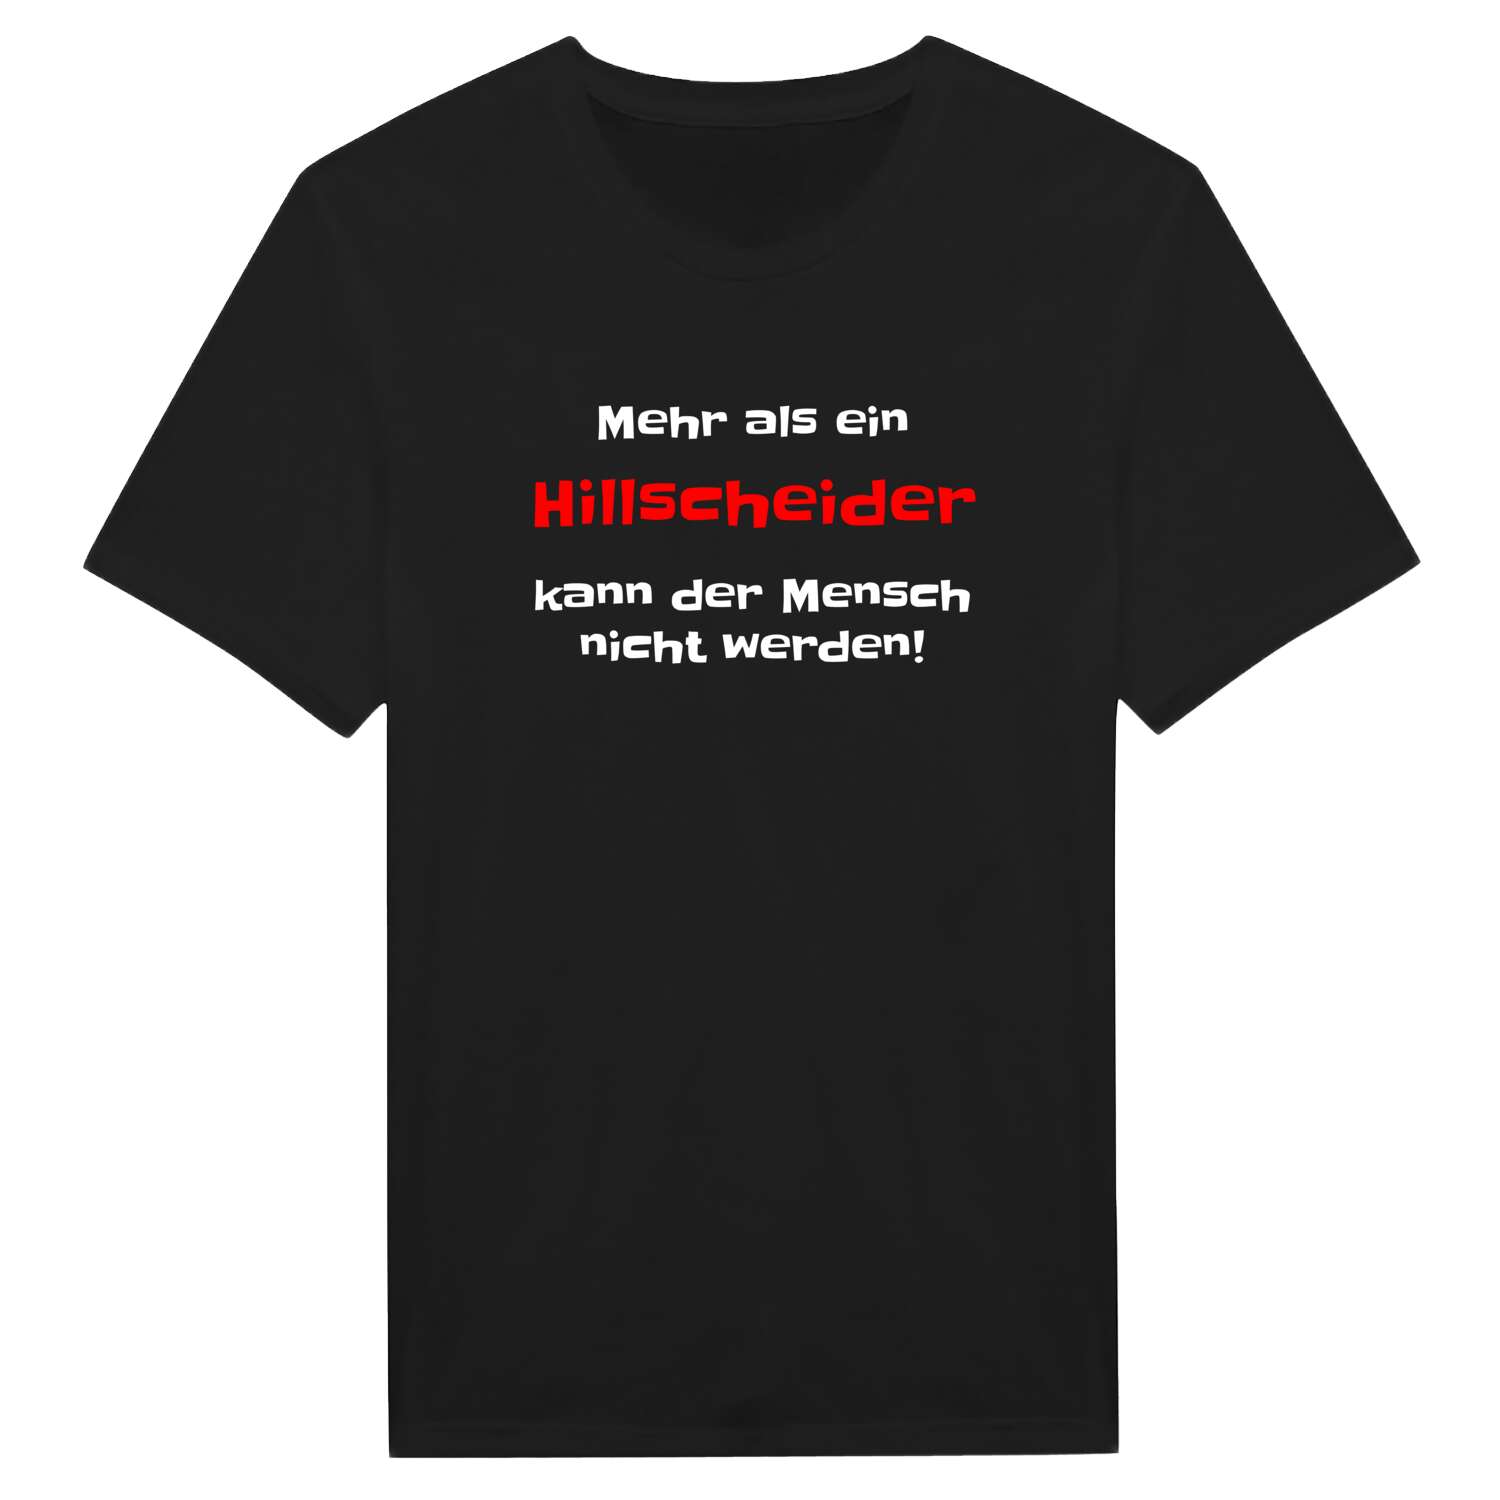 Hillscheid T-Shirt »Mehr als ein«